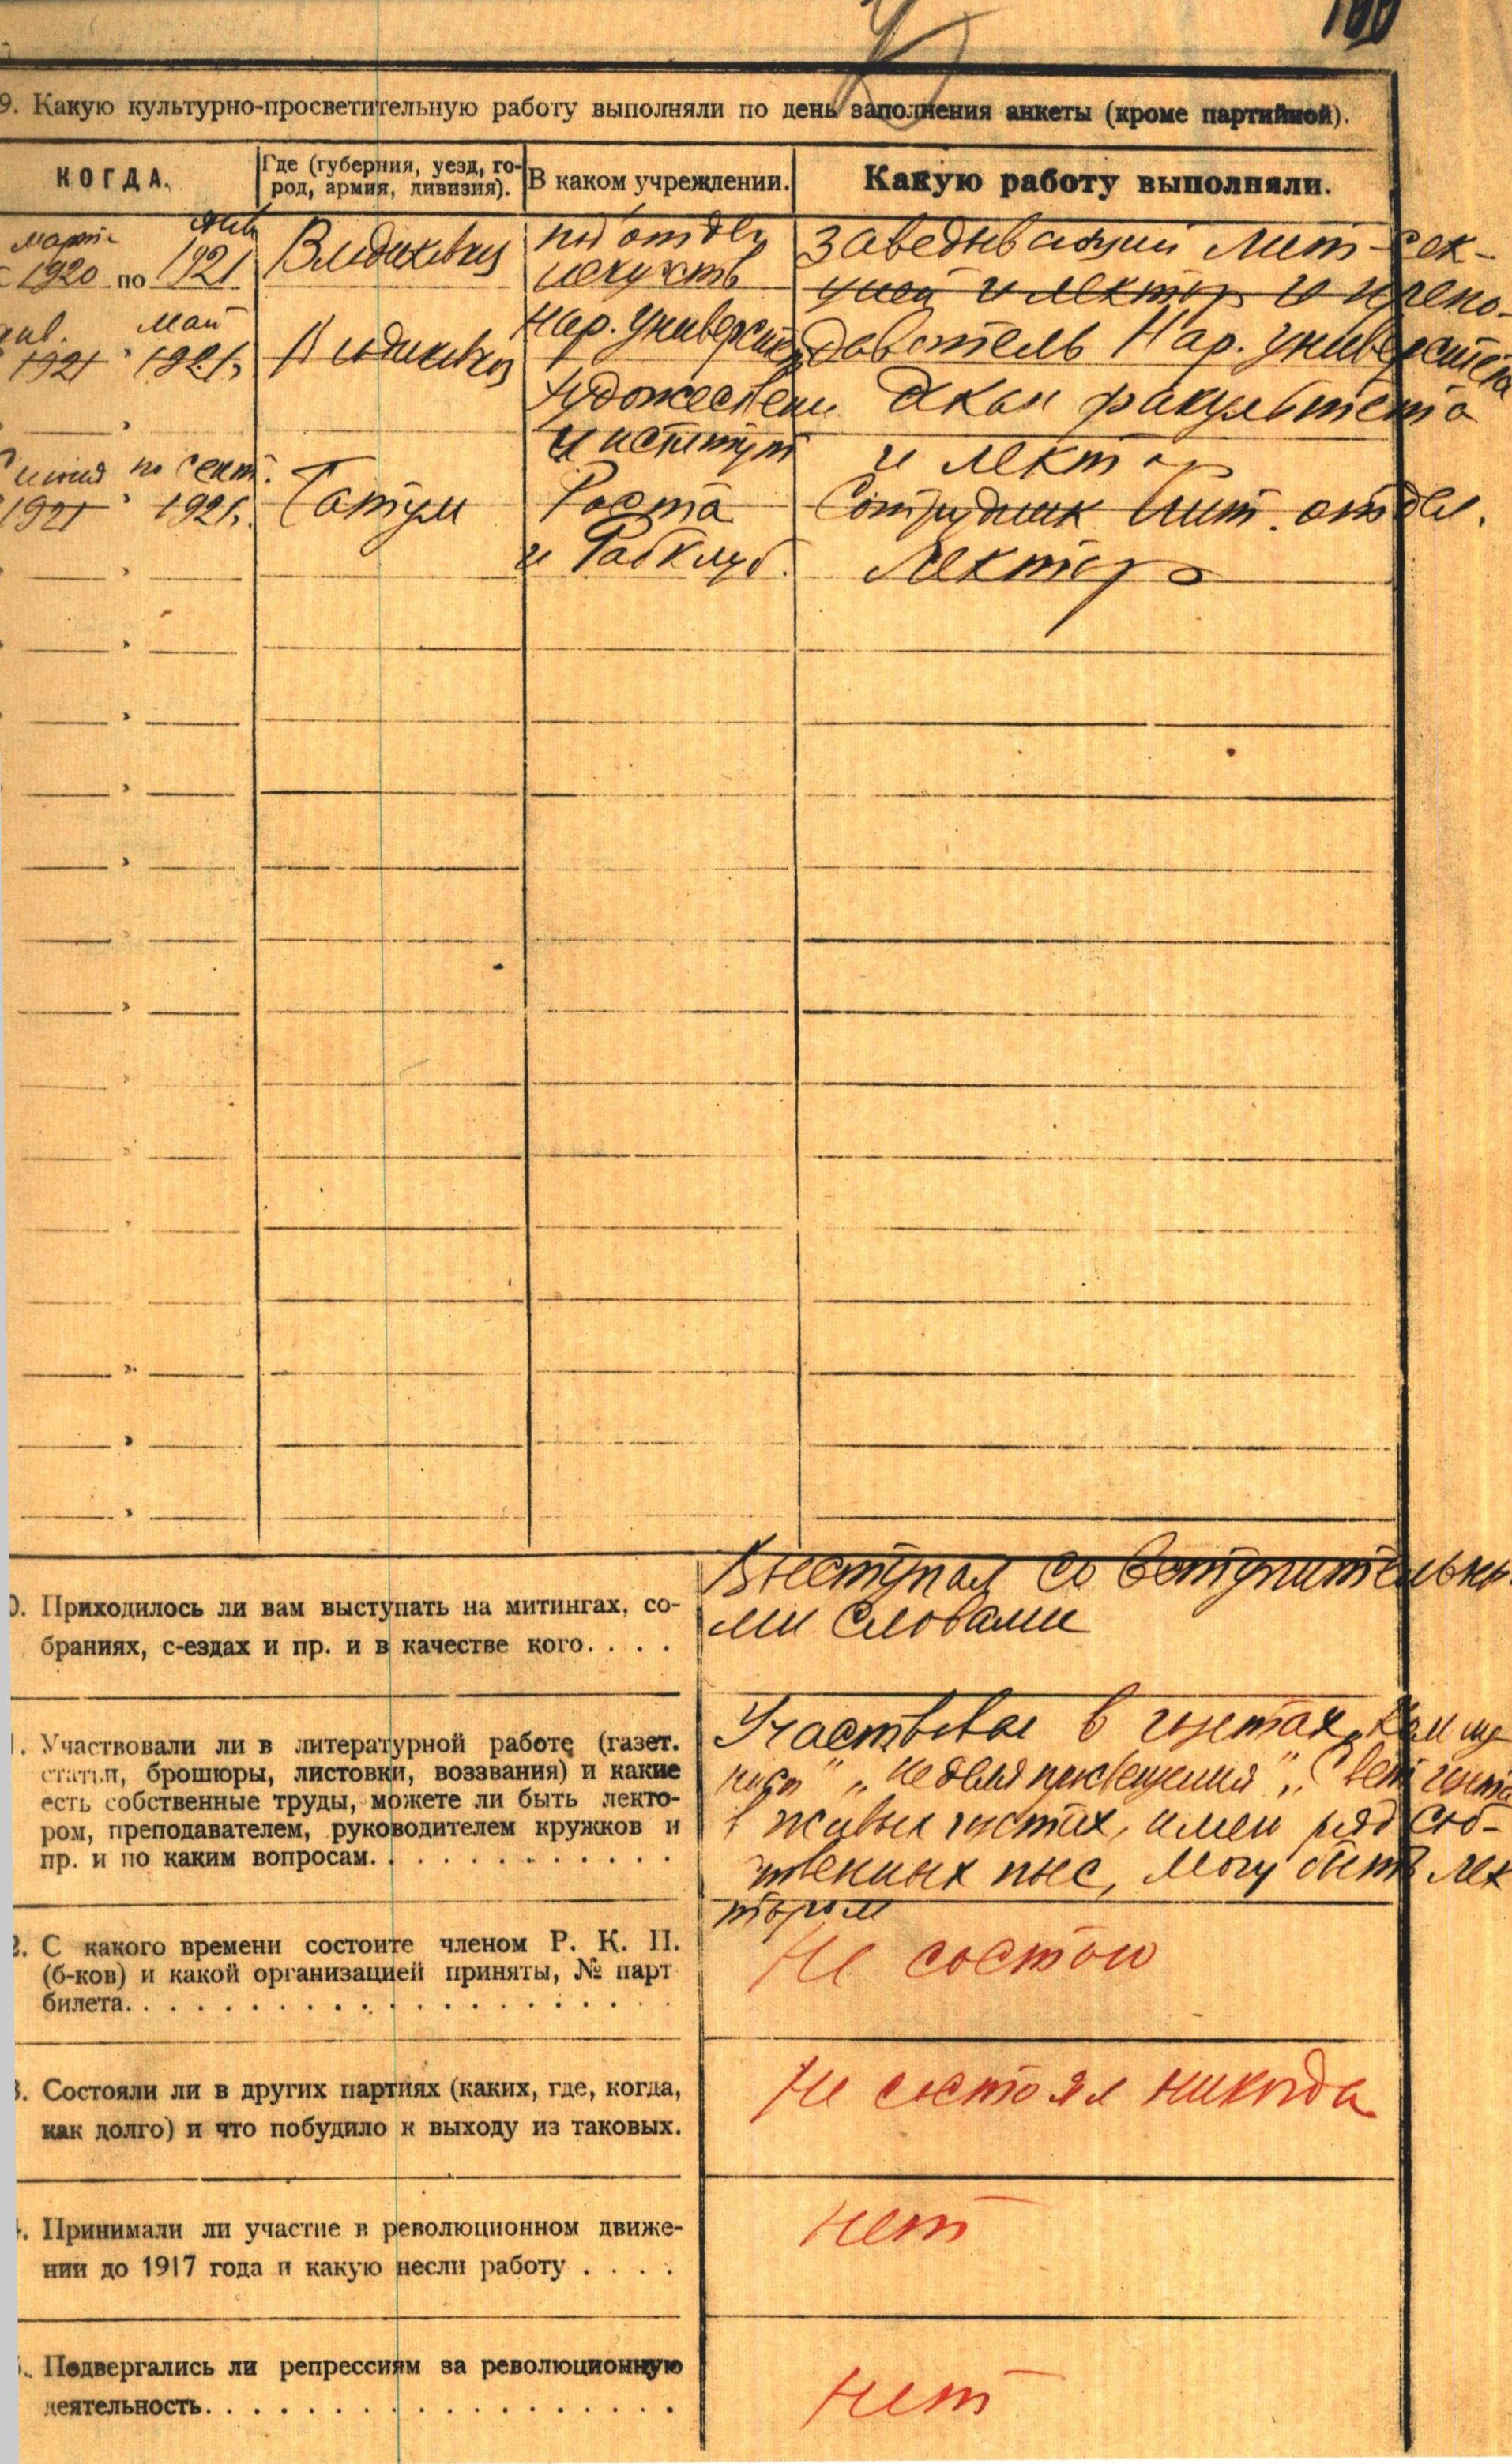 Анкета, которую Михаил Булгаков заполнил при приеме на работу 30 сентября 1921 года